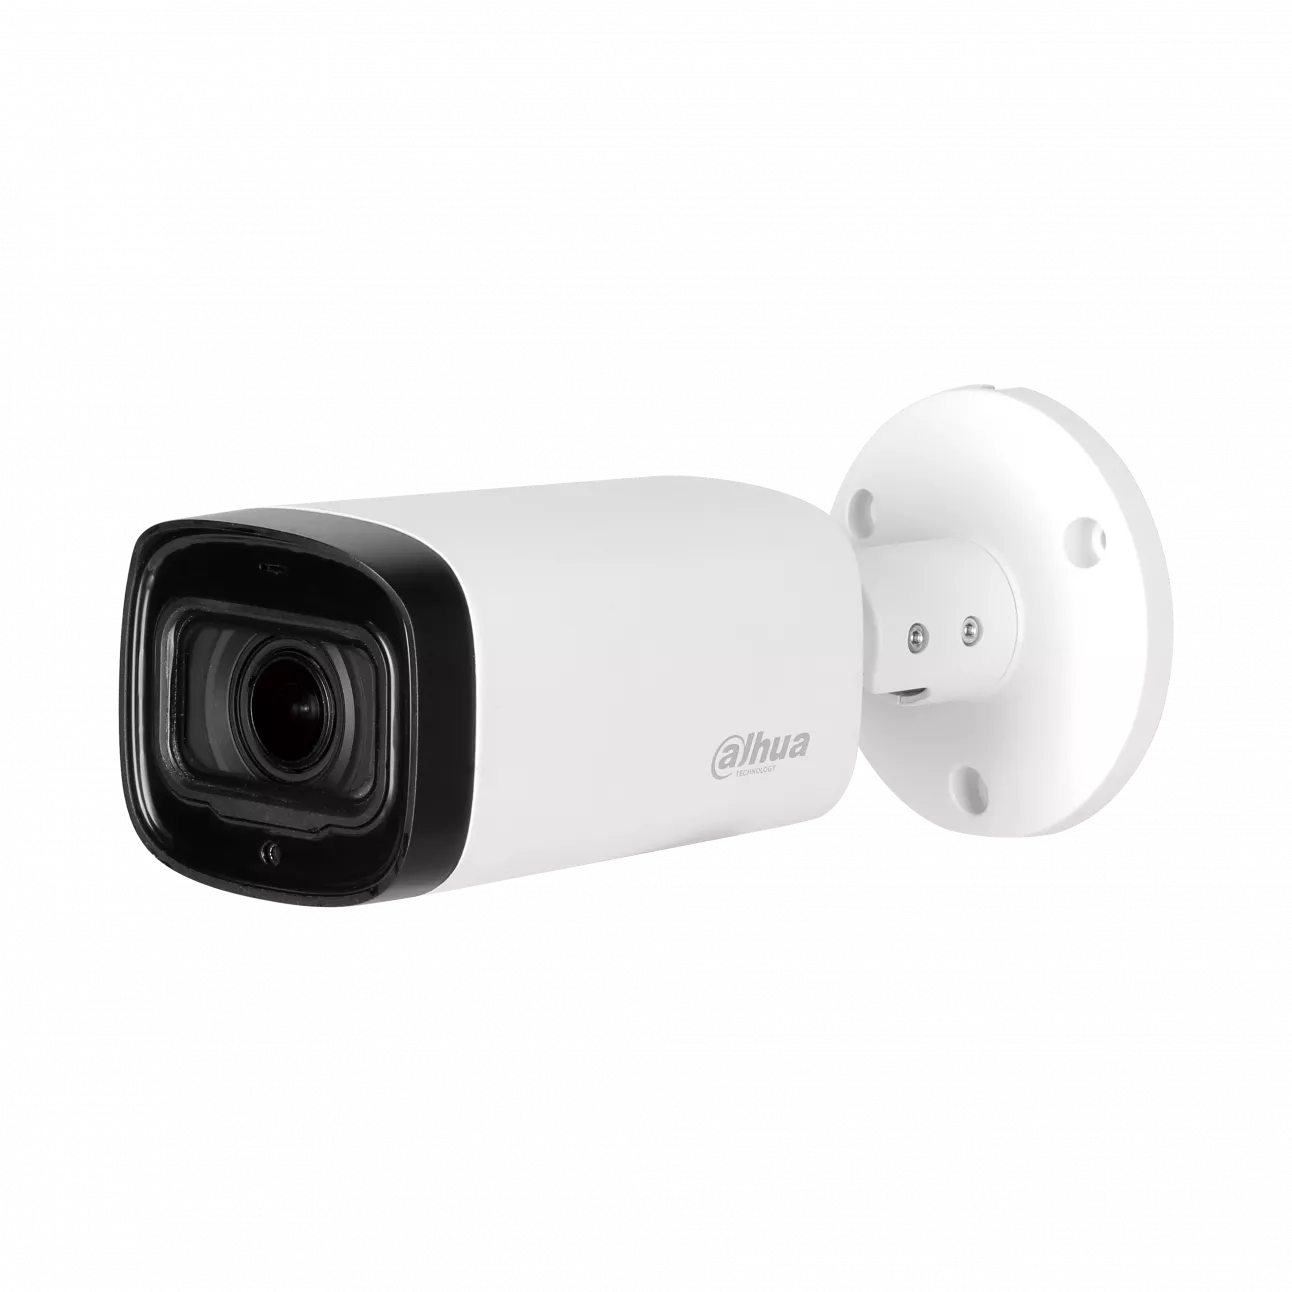 HDCVI видеокамера уличная цилиндрическая Dahua DH-HAC-HFW1230RP-Z-IRE6 2Мп, моториз.объектив 2.7-12мм, ИК до 60м, 12В, IP67